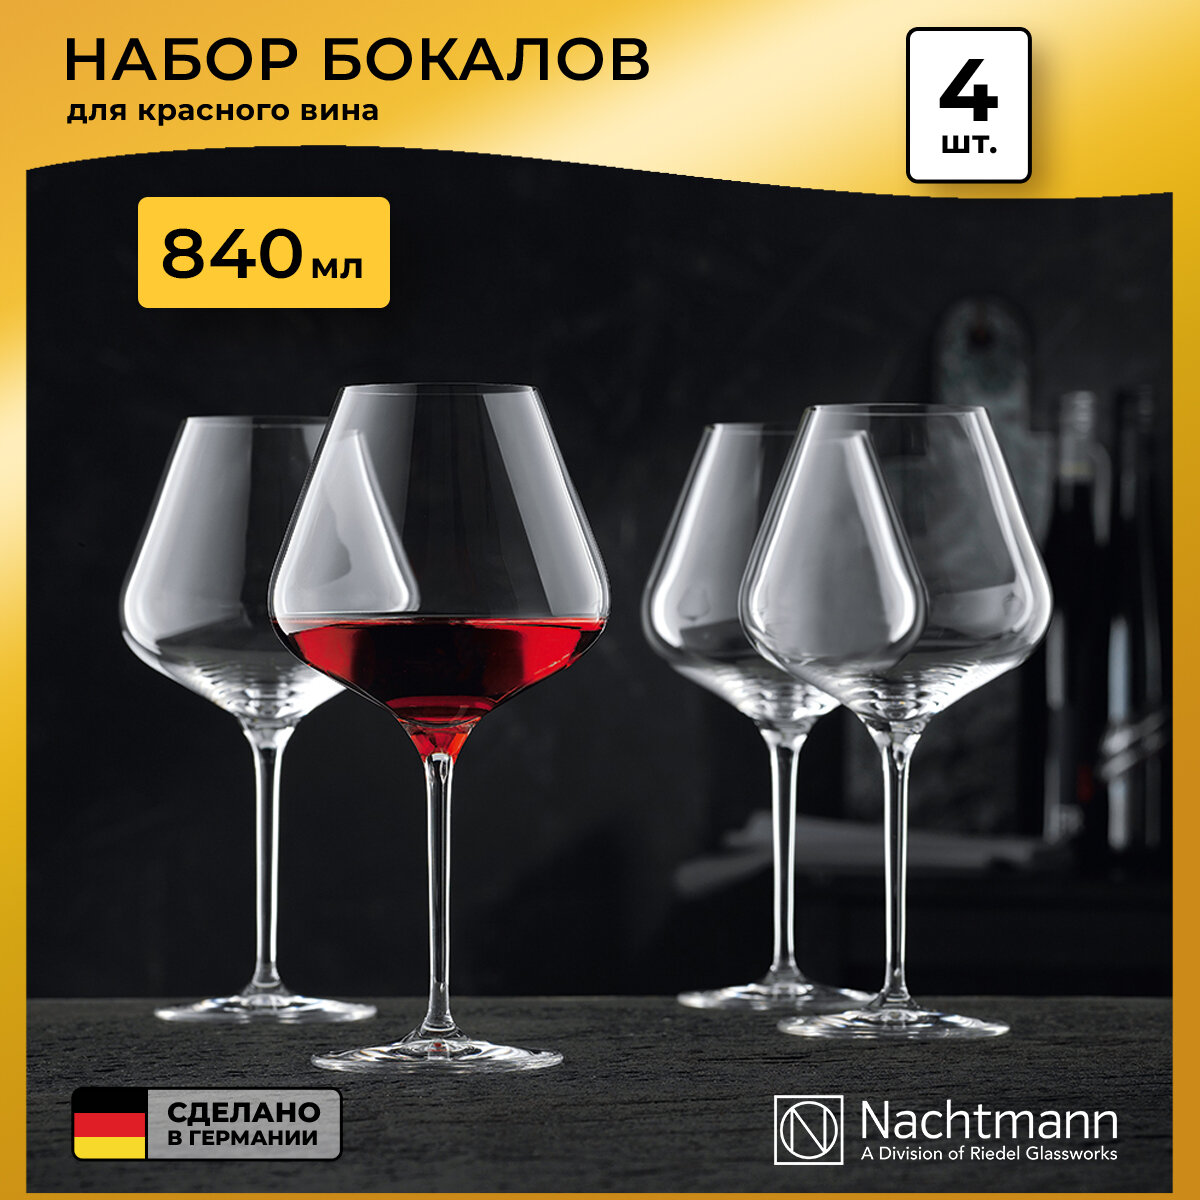 Набор фужеров для красного вина ViNova (840 мл), 4 шт 98072 Nachtmann